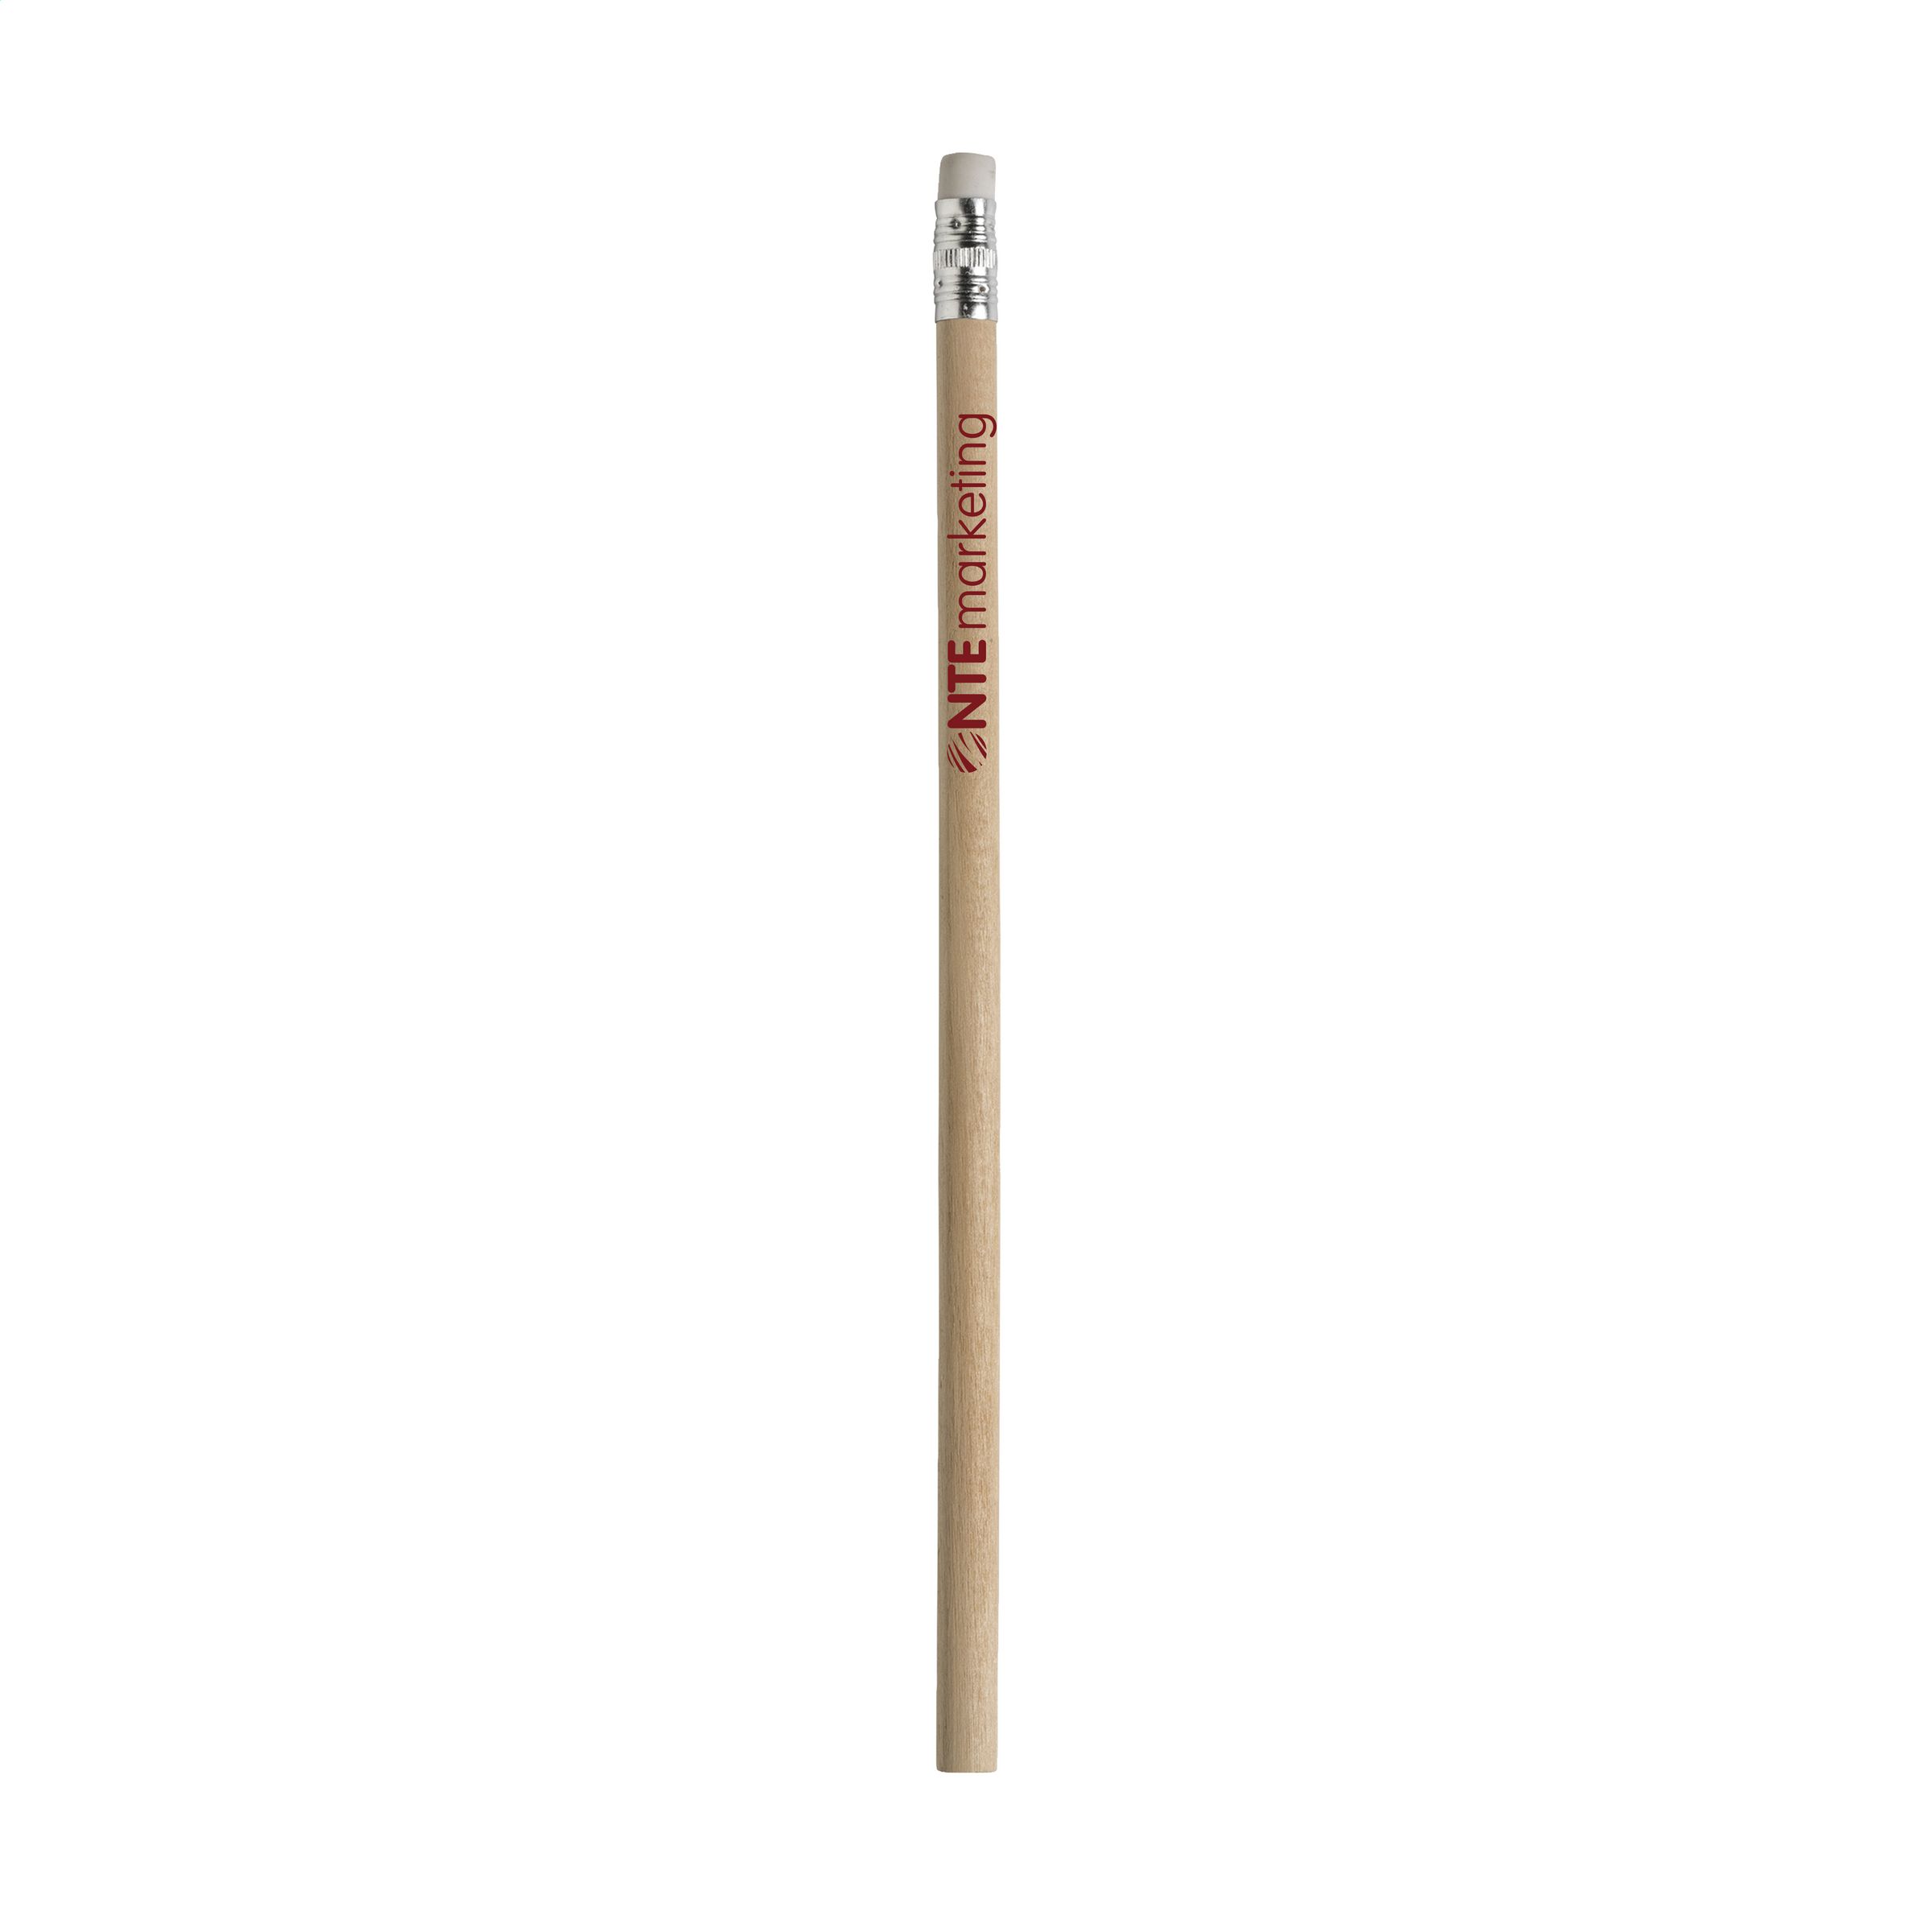 Crayon en bois non vernis HB non taillé avec gomme - Féchain